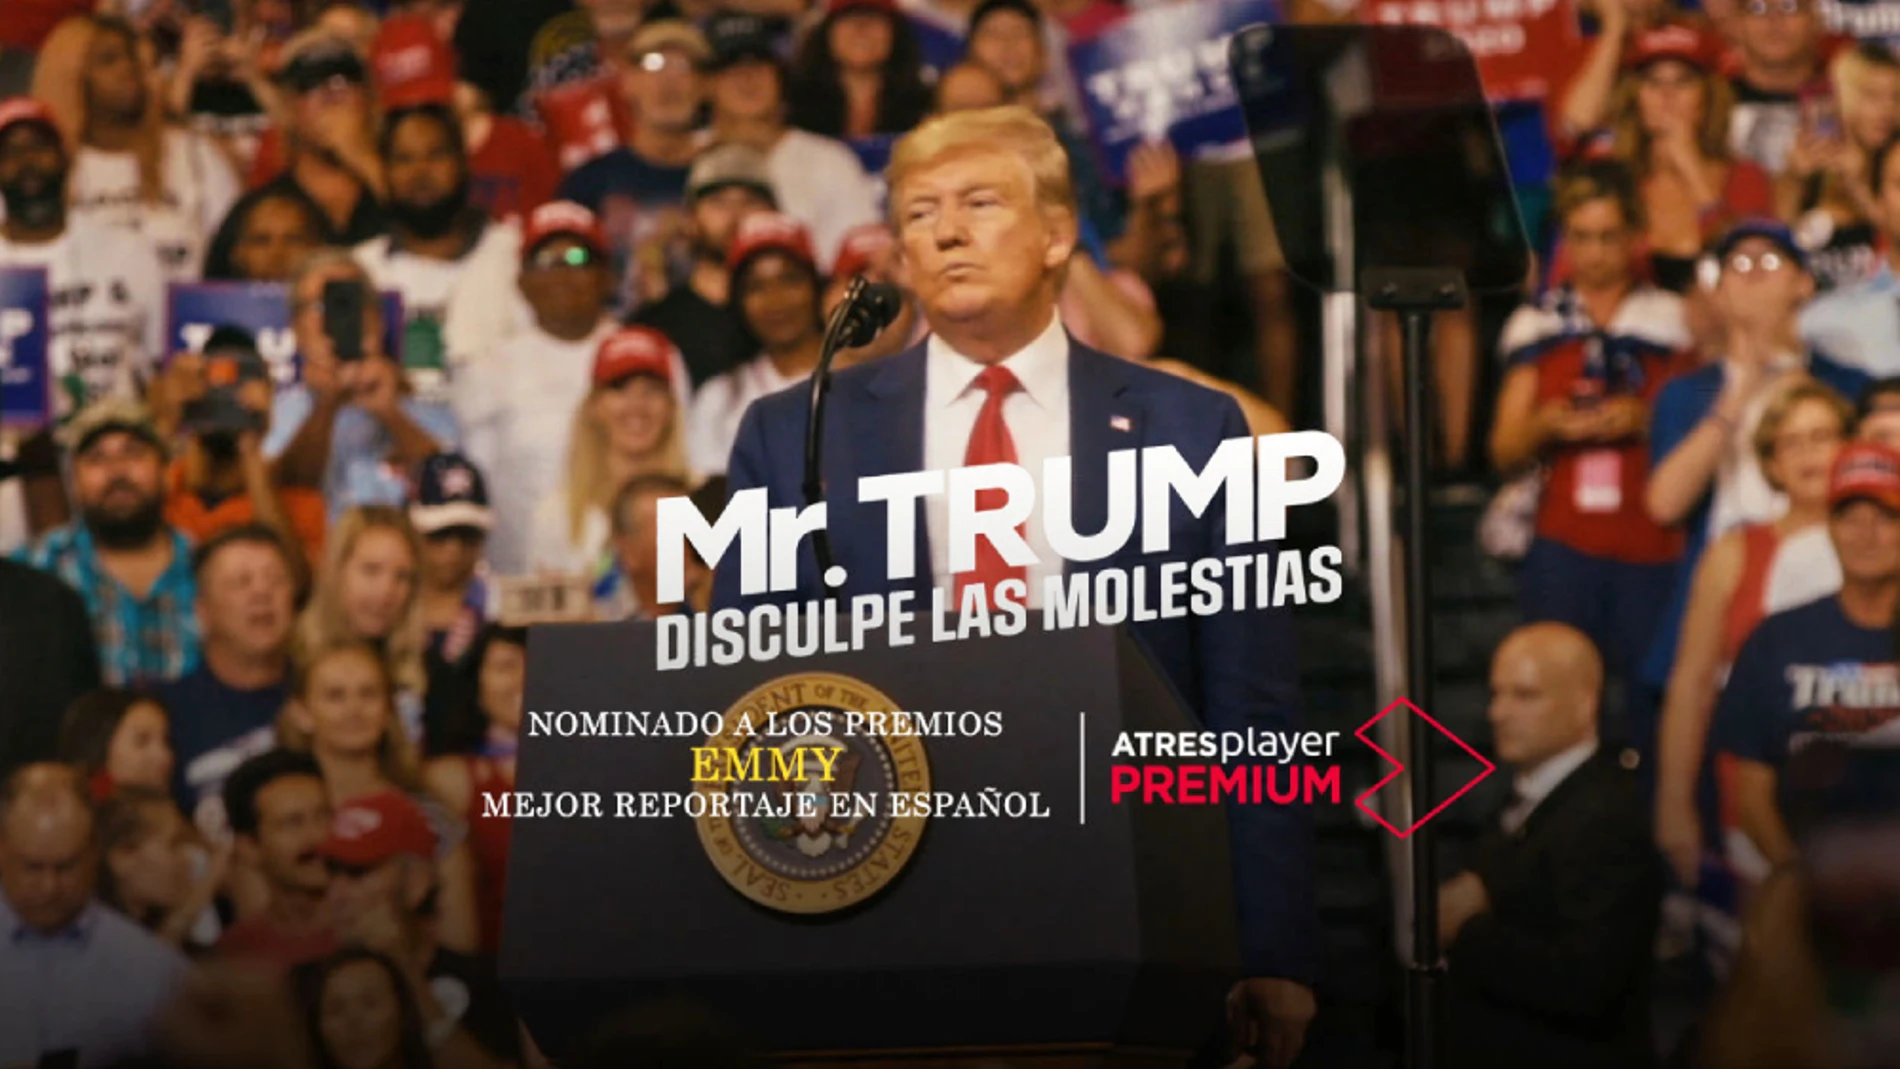 'Mr.Trump, disculpe las molestias': dónde y cuándo ver el documental sobre el presidente de EEUU